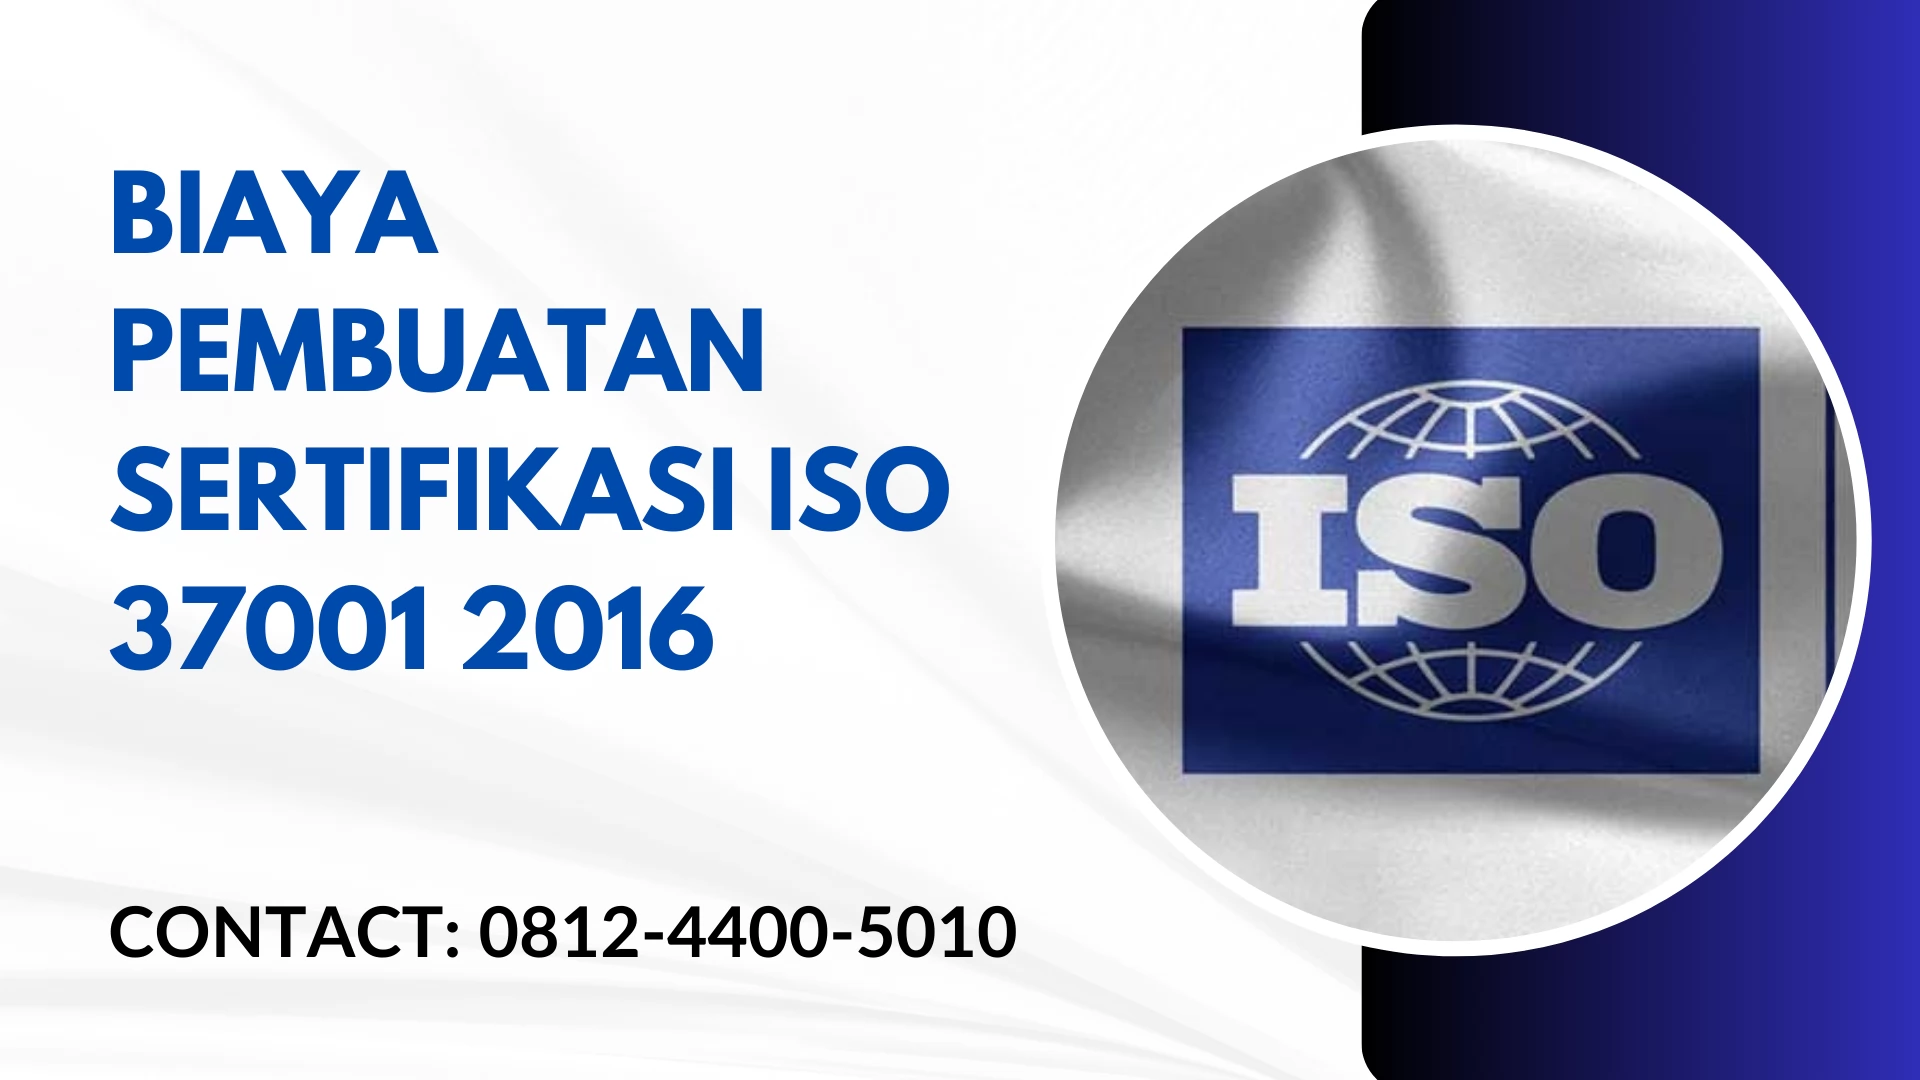 Biaya Pembuatan Sertifikasi ISO 37001 2016